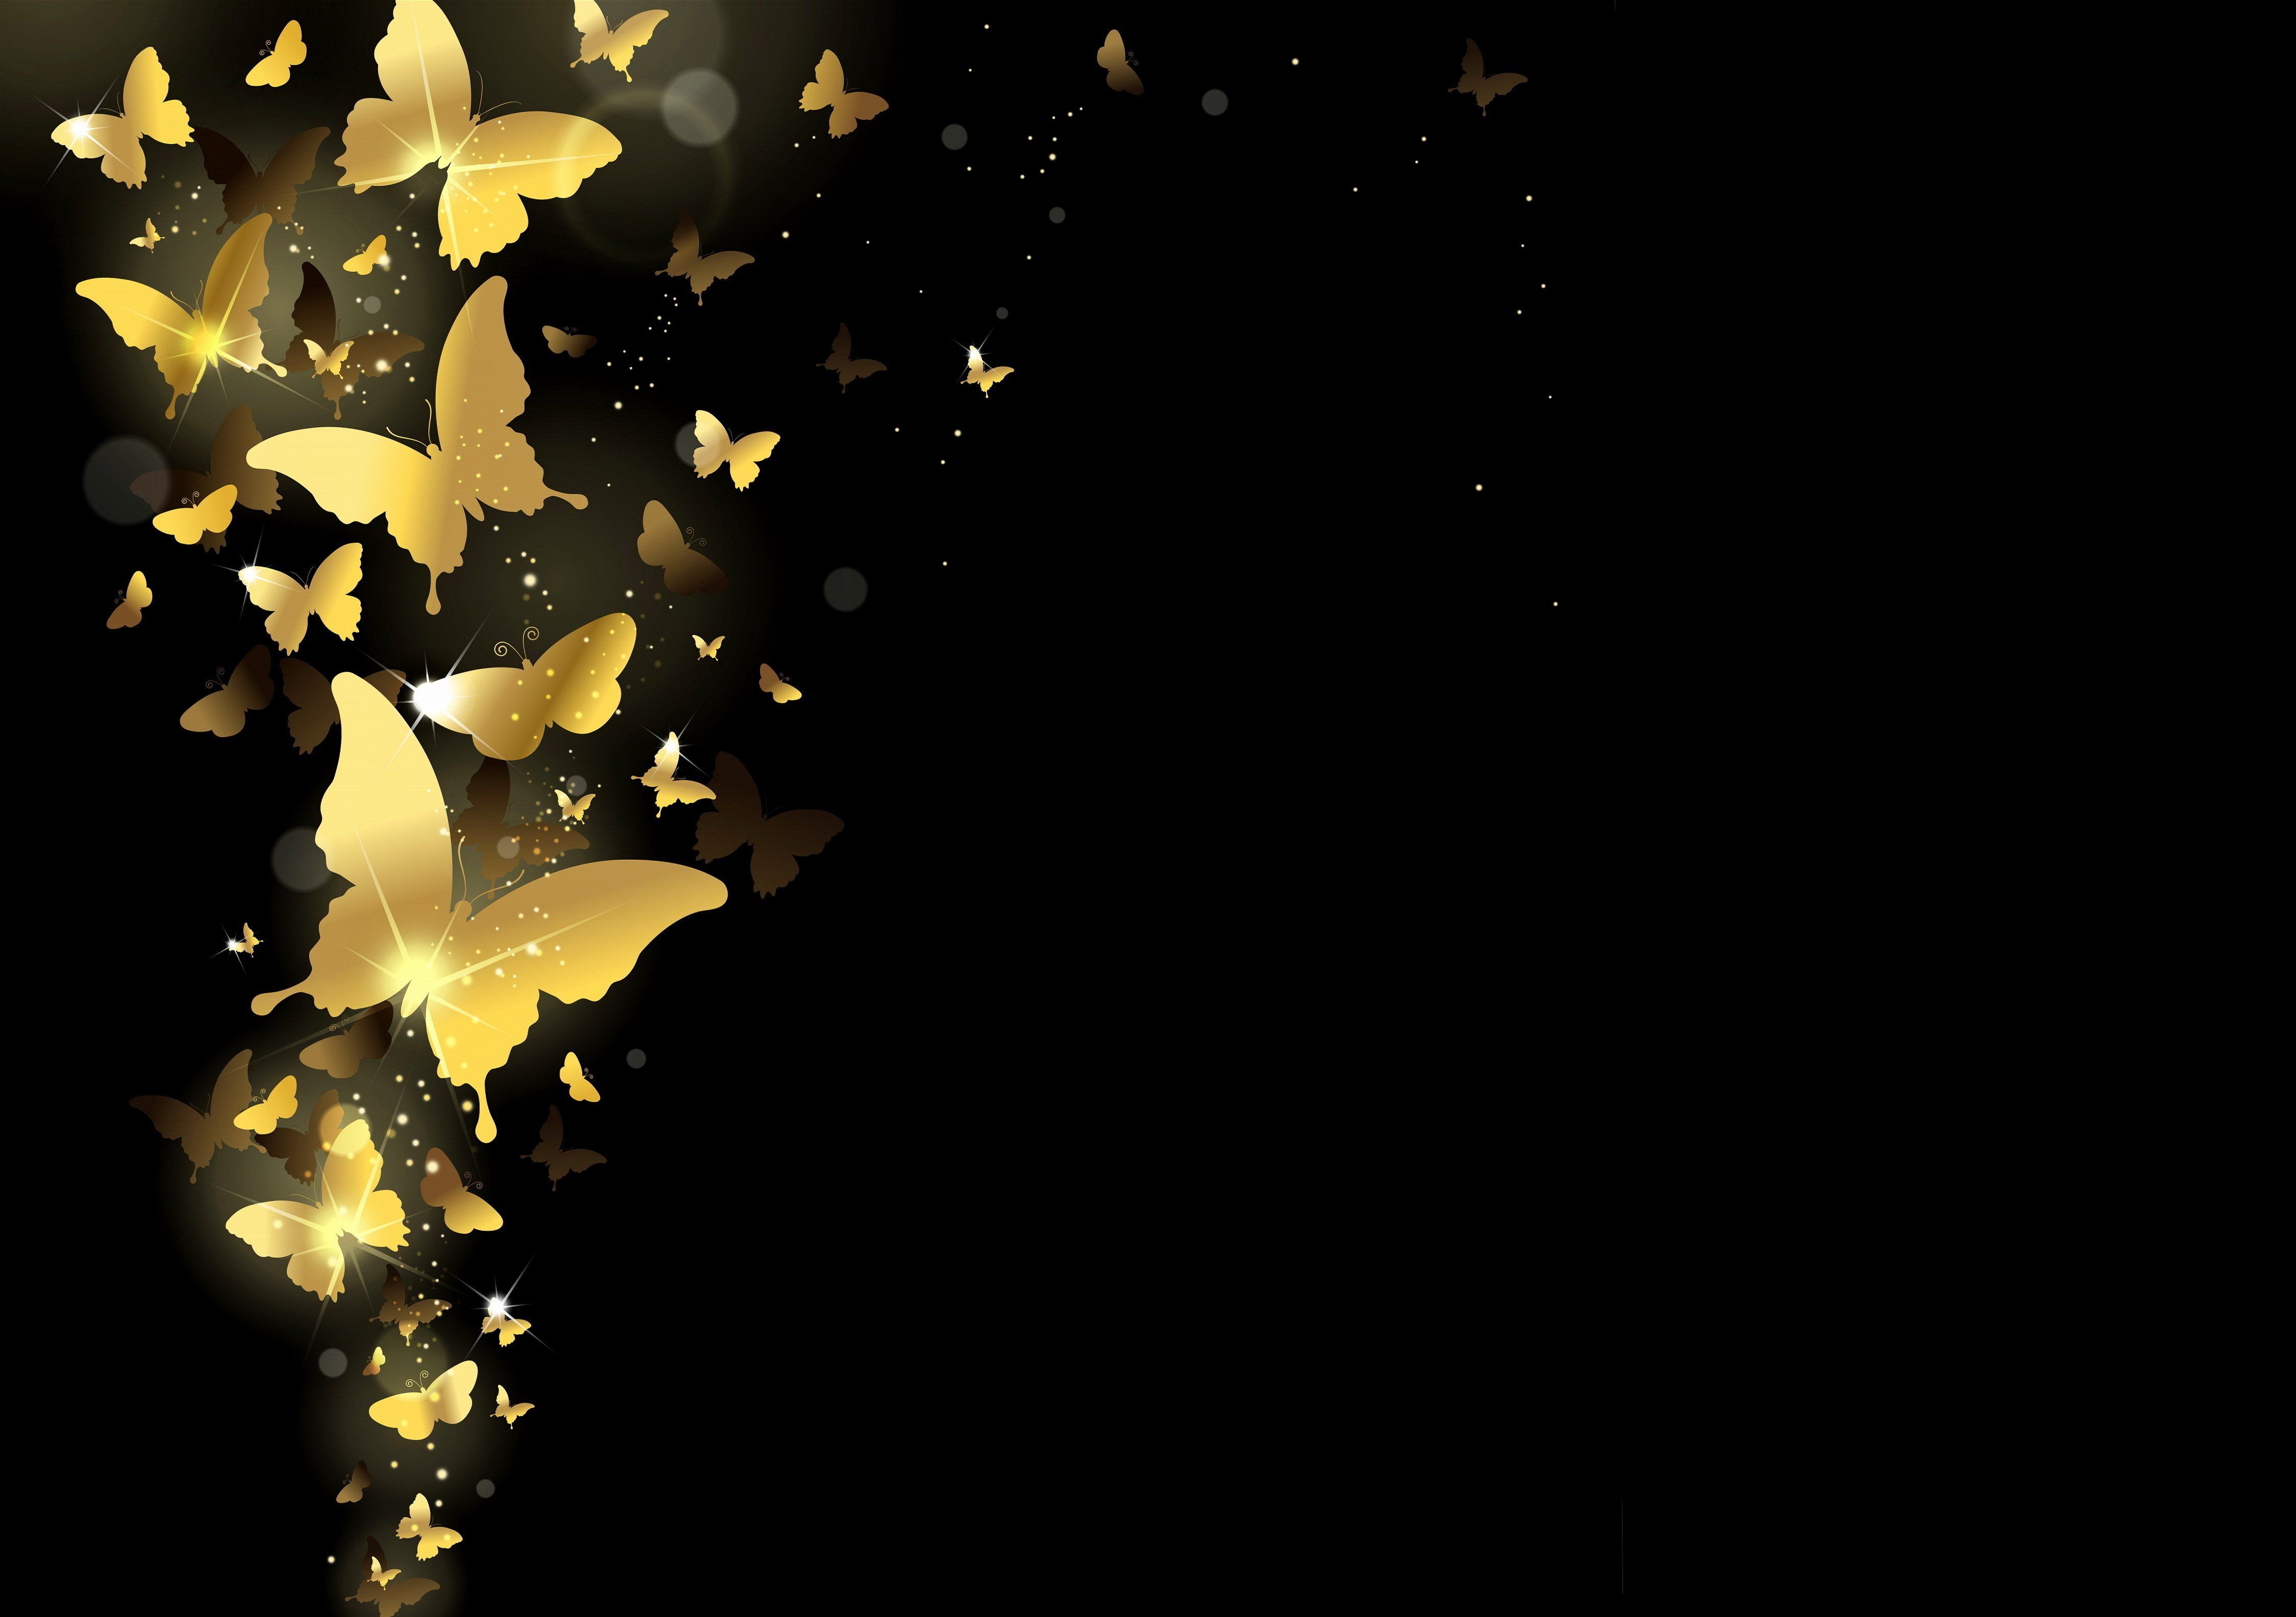 DESEMBARALHE: Black Wallpaper Gold Butterflies